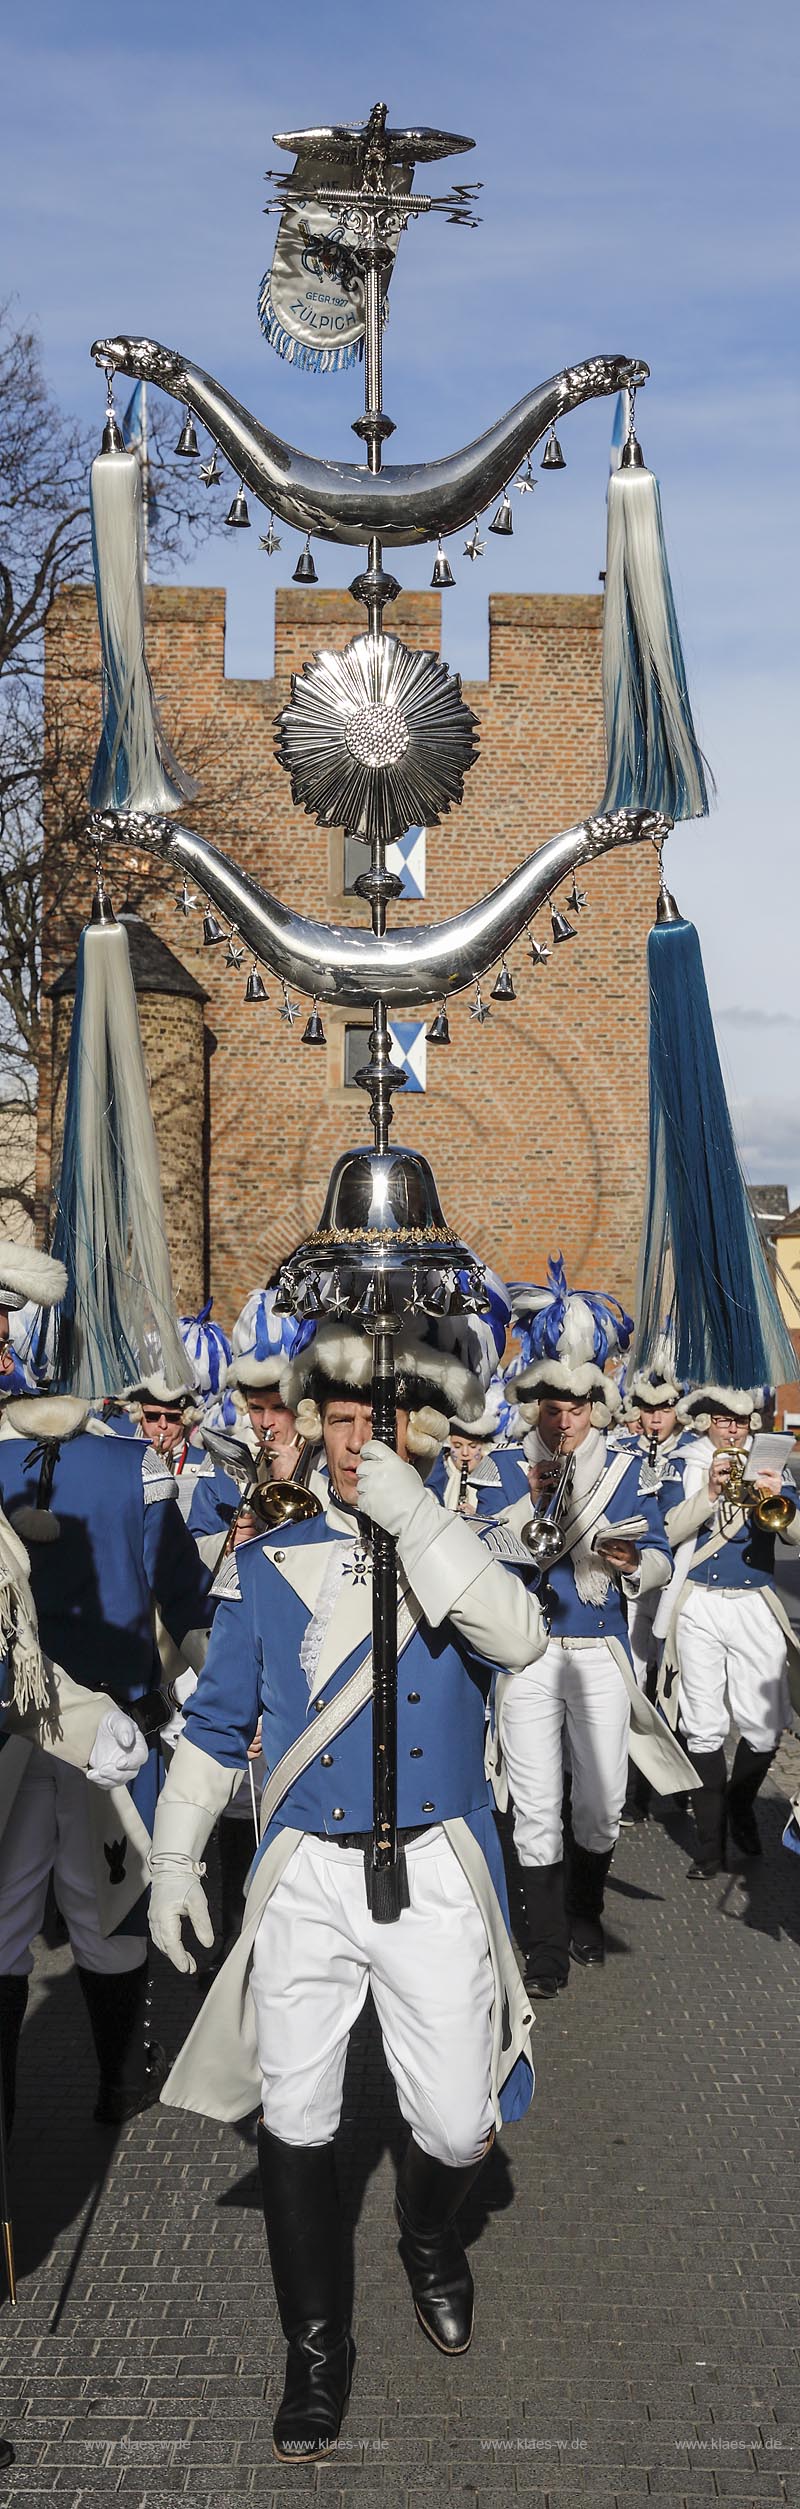 Zuelpich, Karnevalisten "Blaue Funken Zuelpich" Musikzug Trompeter, Rosenmontagszug; Zuelpich carnival at towngate "Koelntor", trumpeter